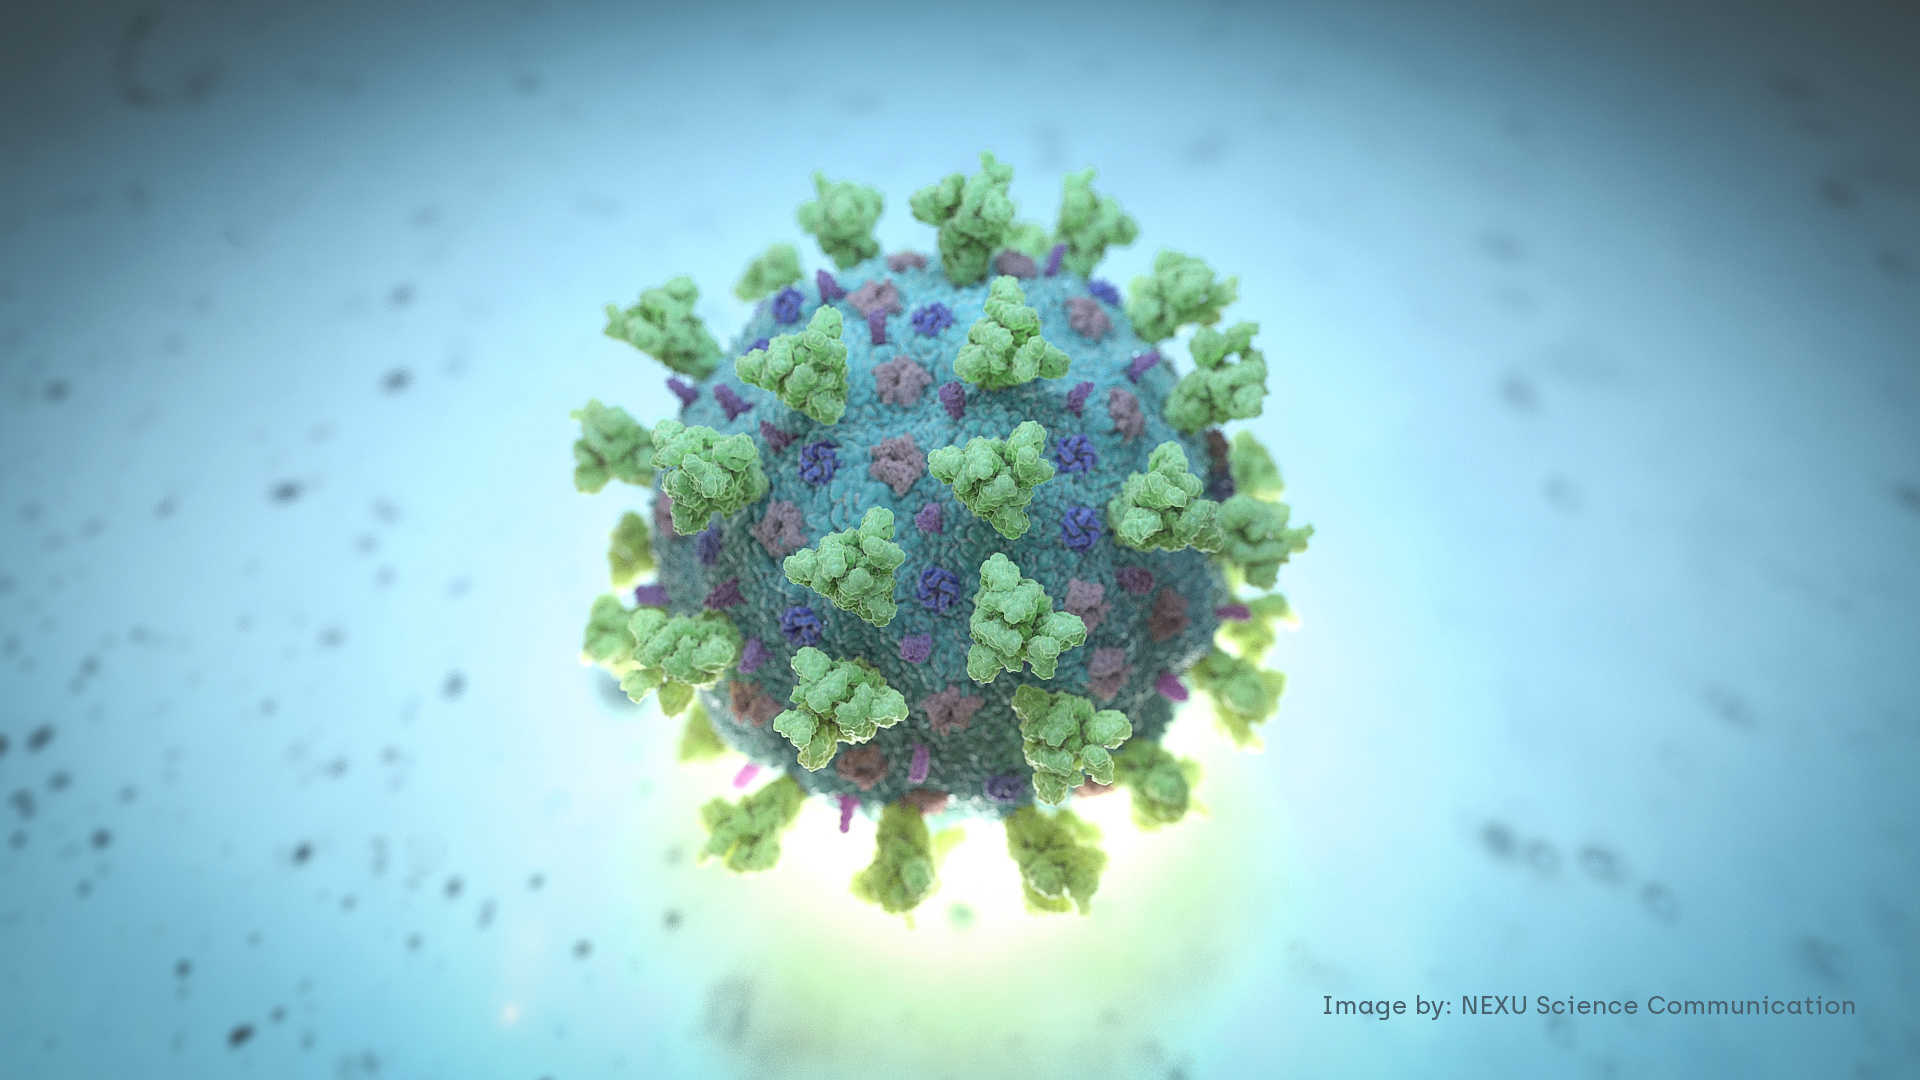 عالم يحذر من نوعين جديدين لفيروس كورونا يهددان العالم